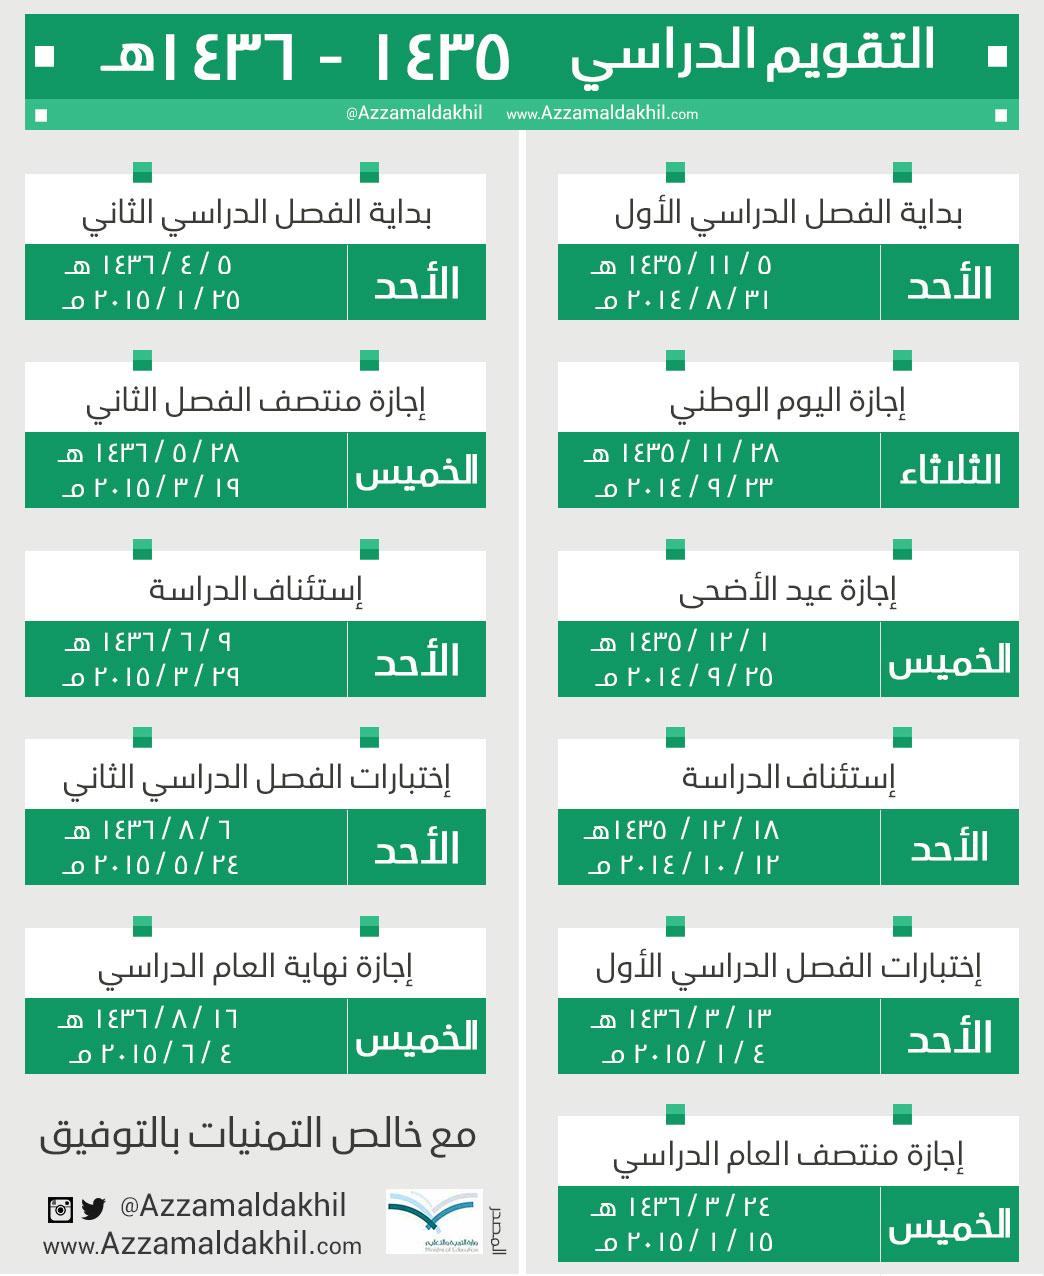 التقويم الدراسي في السعودية مع الاجازات 2014/2015